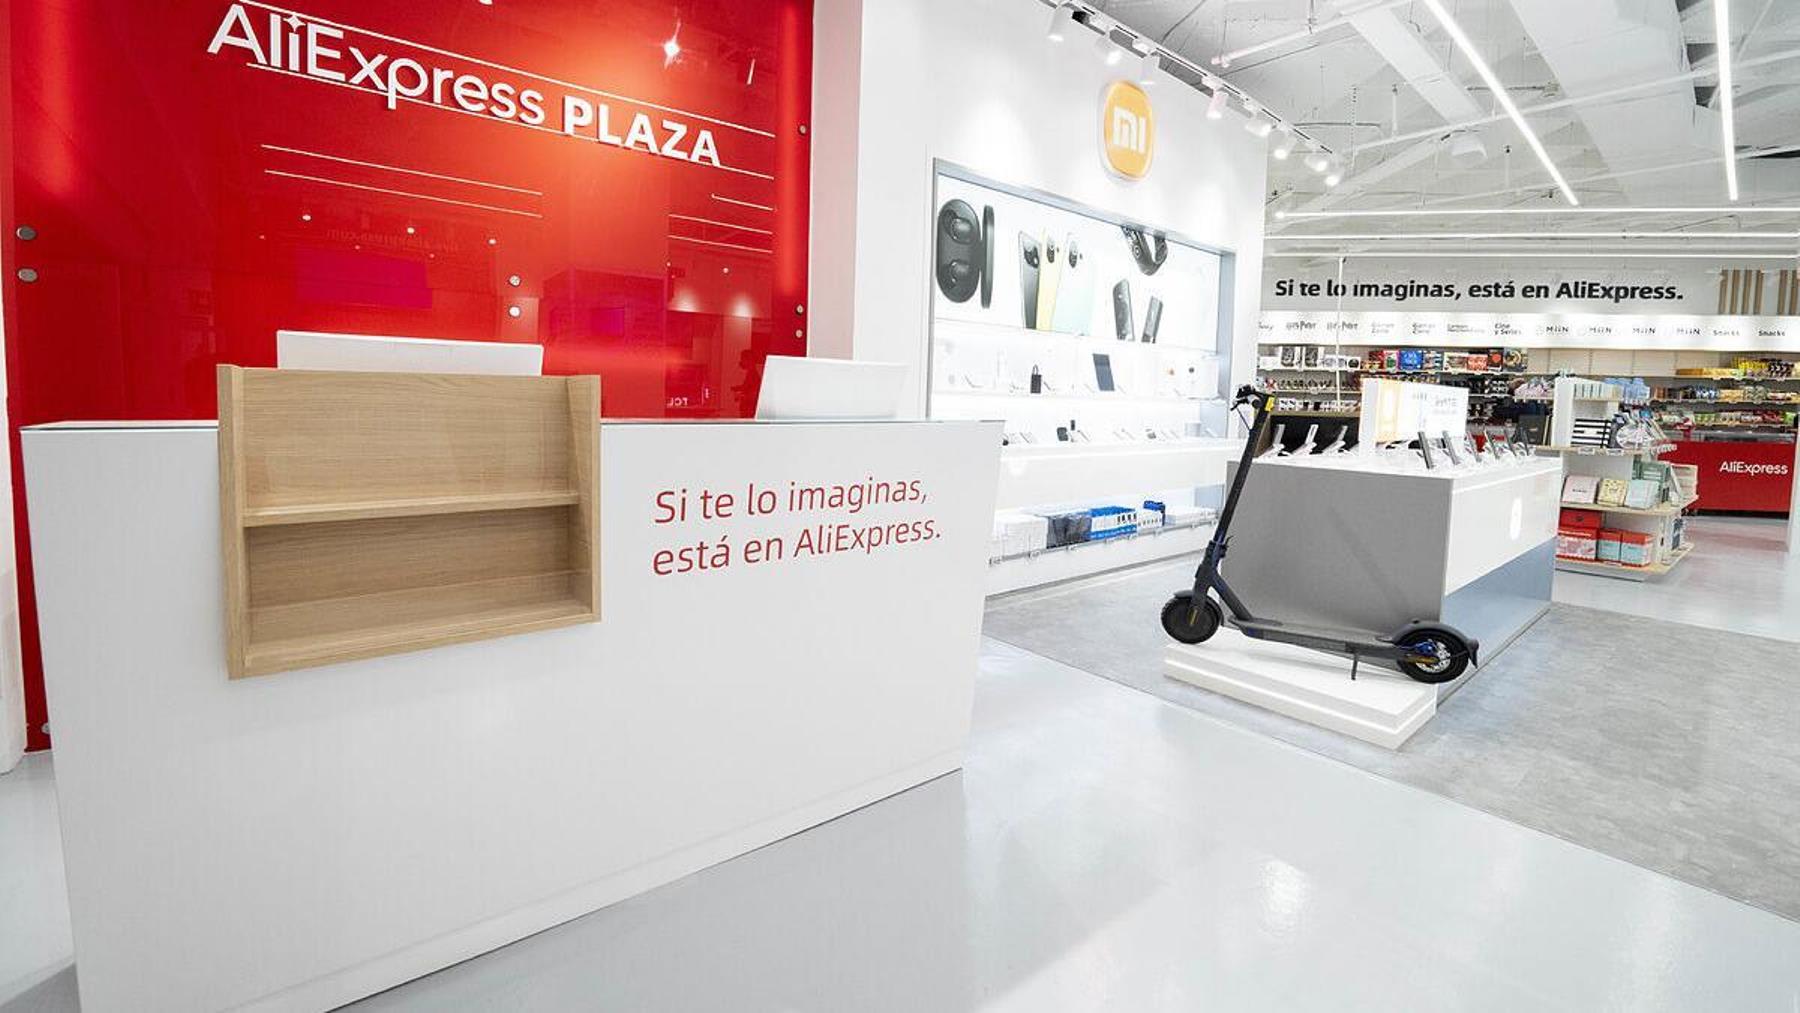 La primera tienda de Aliexpress llega a Málaga provocando una gran revolución